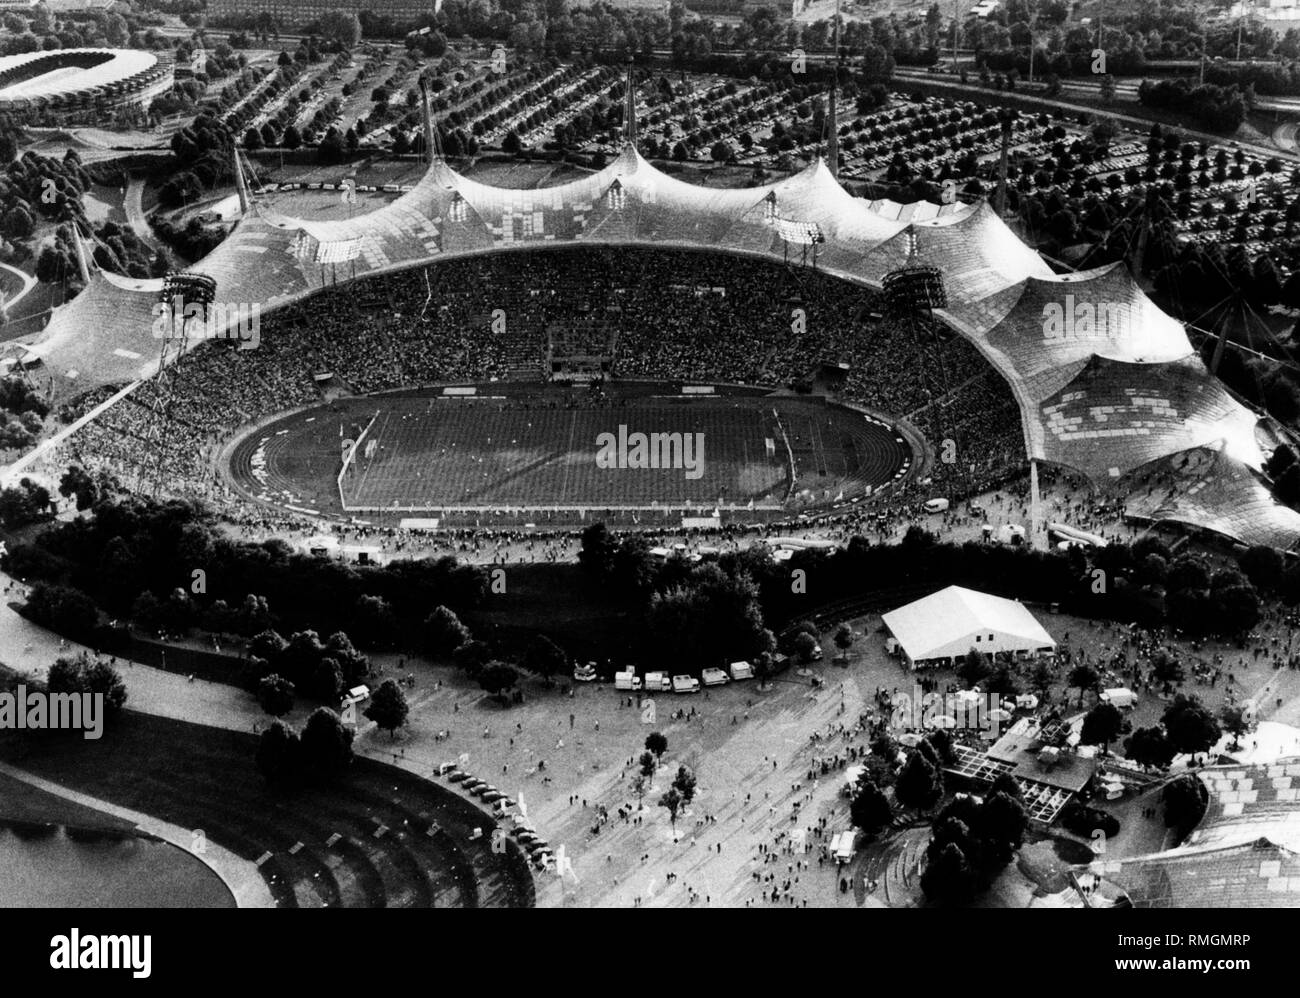 Vue sur le stade olympique de Munich au cours de la ronde préliminaire de  l'Euro de football en Allemagne 1988 entre la RFA et l'Espagne. Résultat  Final : 2 : 0. Au